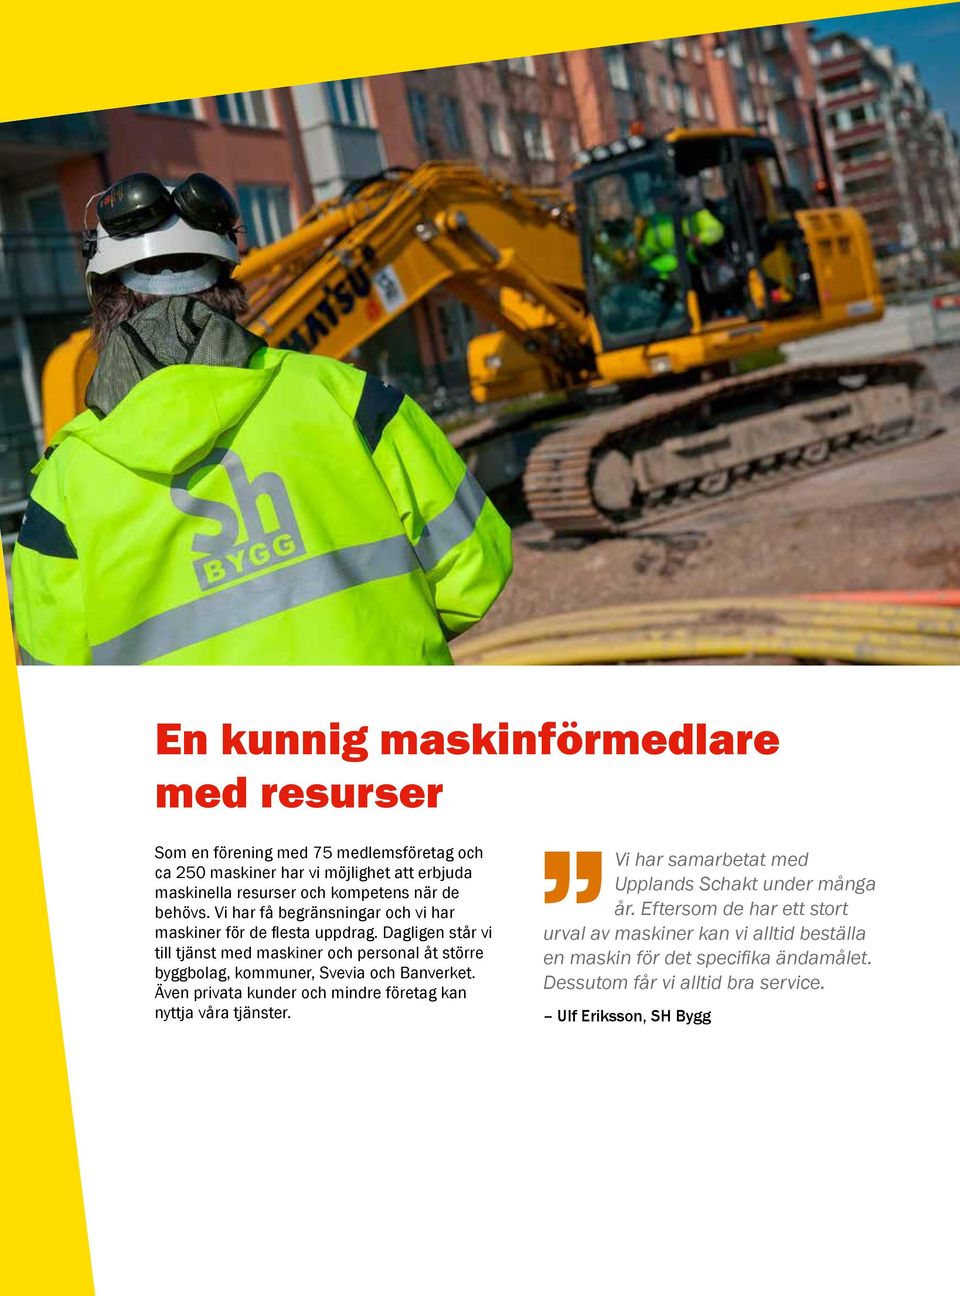 Dagligen står vi till tjänst med maskiner och personal åt större byggbolag, kommuner, Svevia och Banverket.